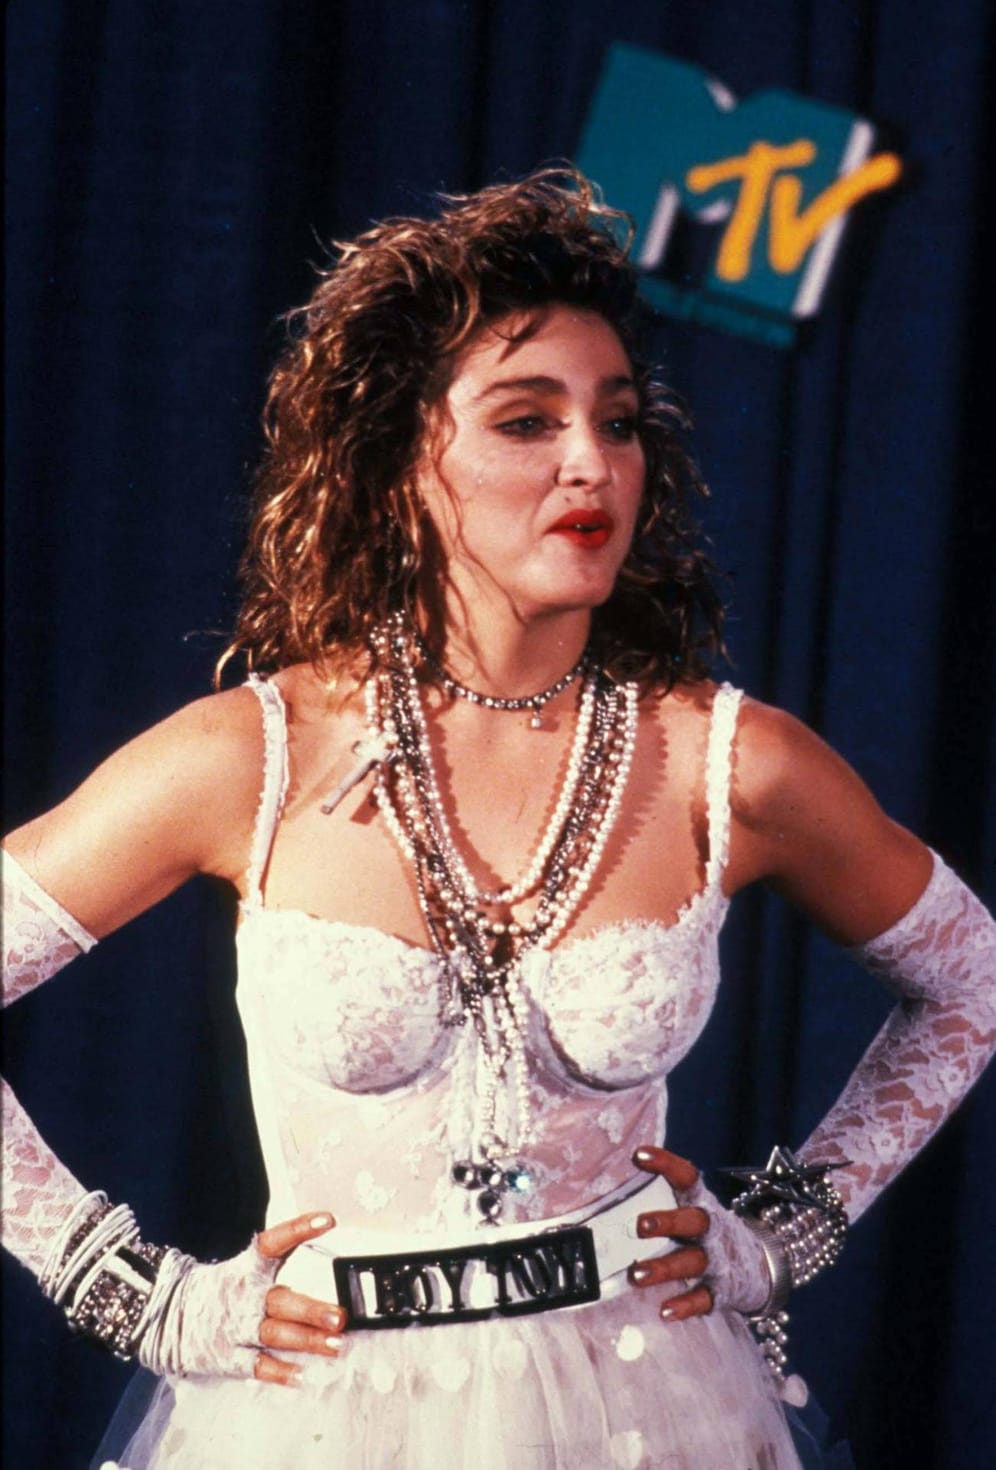 Legendär war ihr Auftritt bei den MTV-Music Awards im Jahr 1984. Damals war Madonna gerade einmal 25 Jahre alt schockte ganz Amerika mit dem Titelsong ihres zweiten Albums "Like a Virgin". Sie erschien in einem Hochzeitskleid und simulierte bei ihrem Bühnenauftritt Sex.